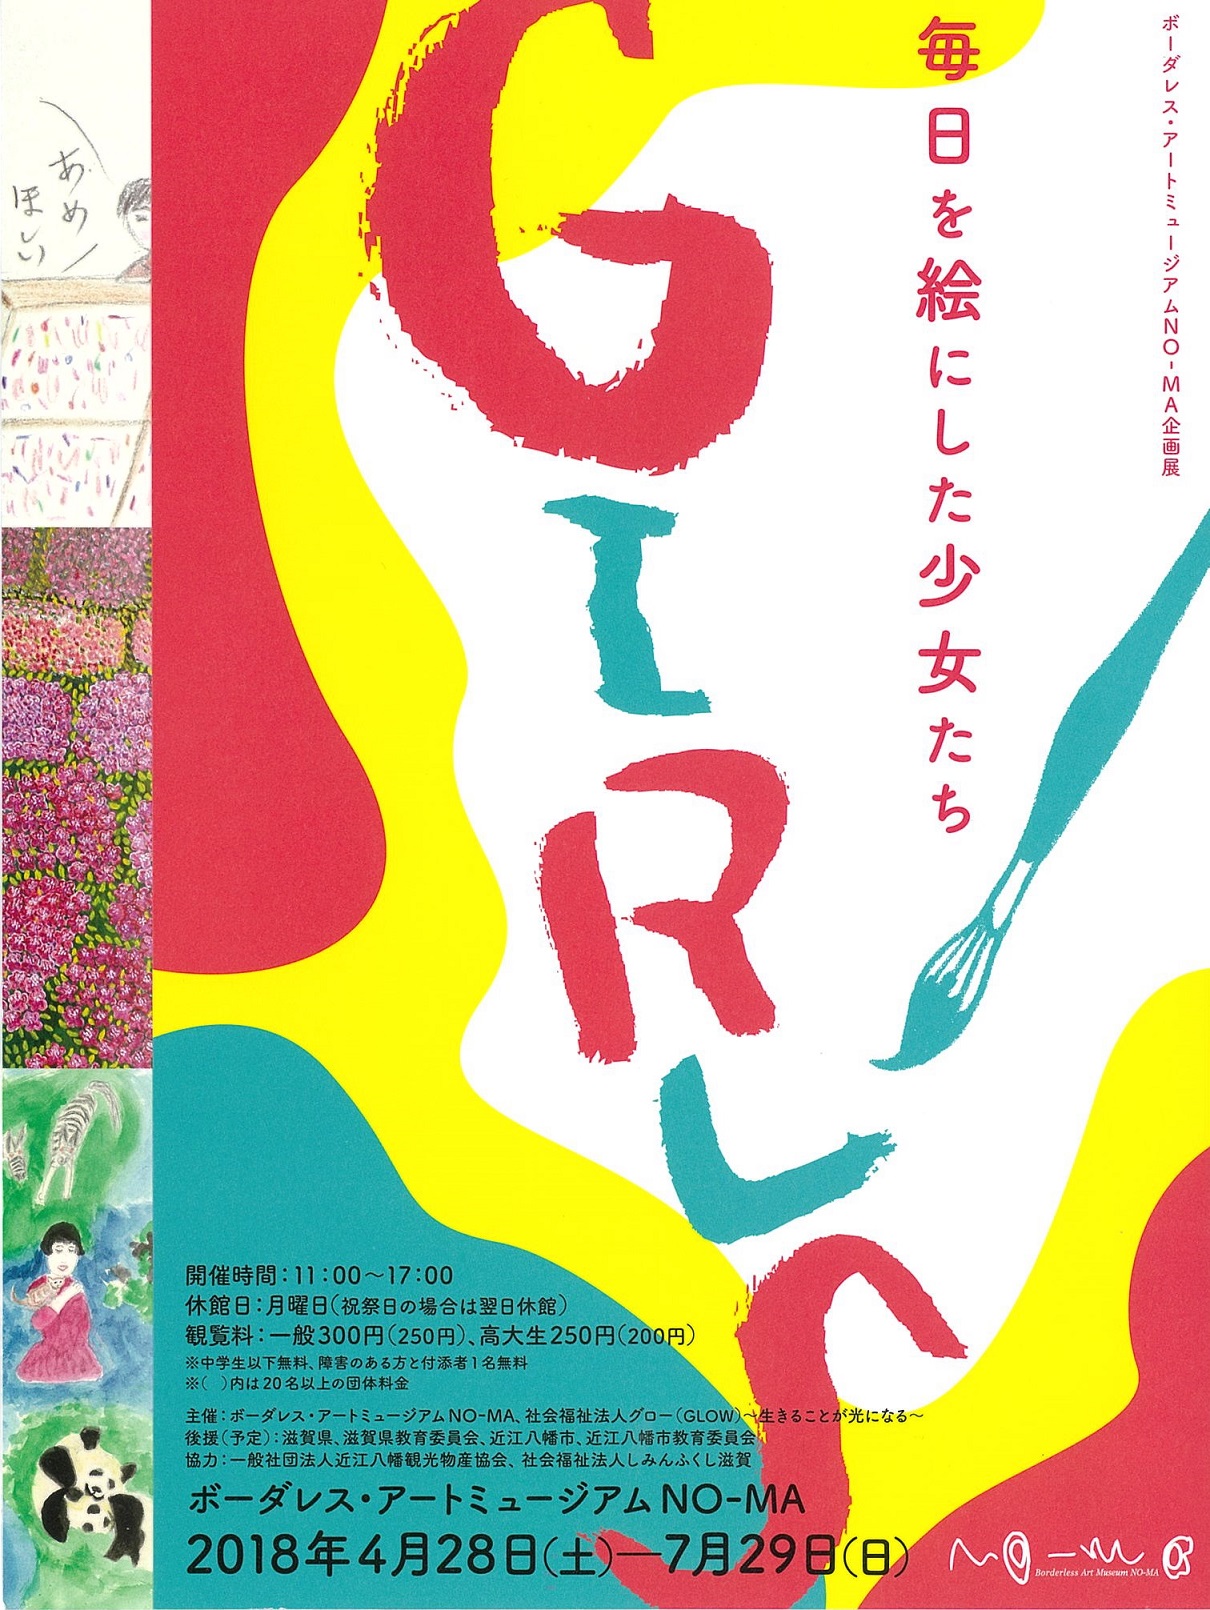 ボーダレス・アートミュージアムNO-MA企画展「GIRLS 毎日を絵にした少女たち」